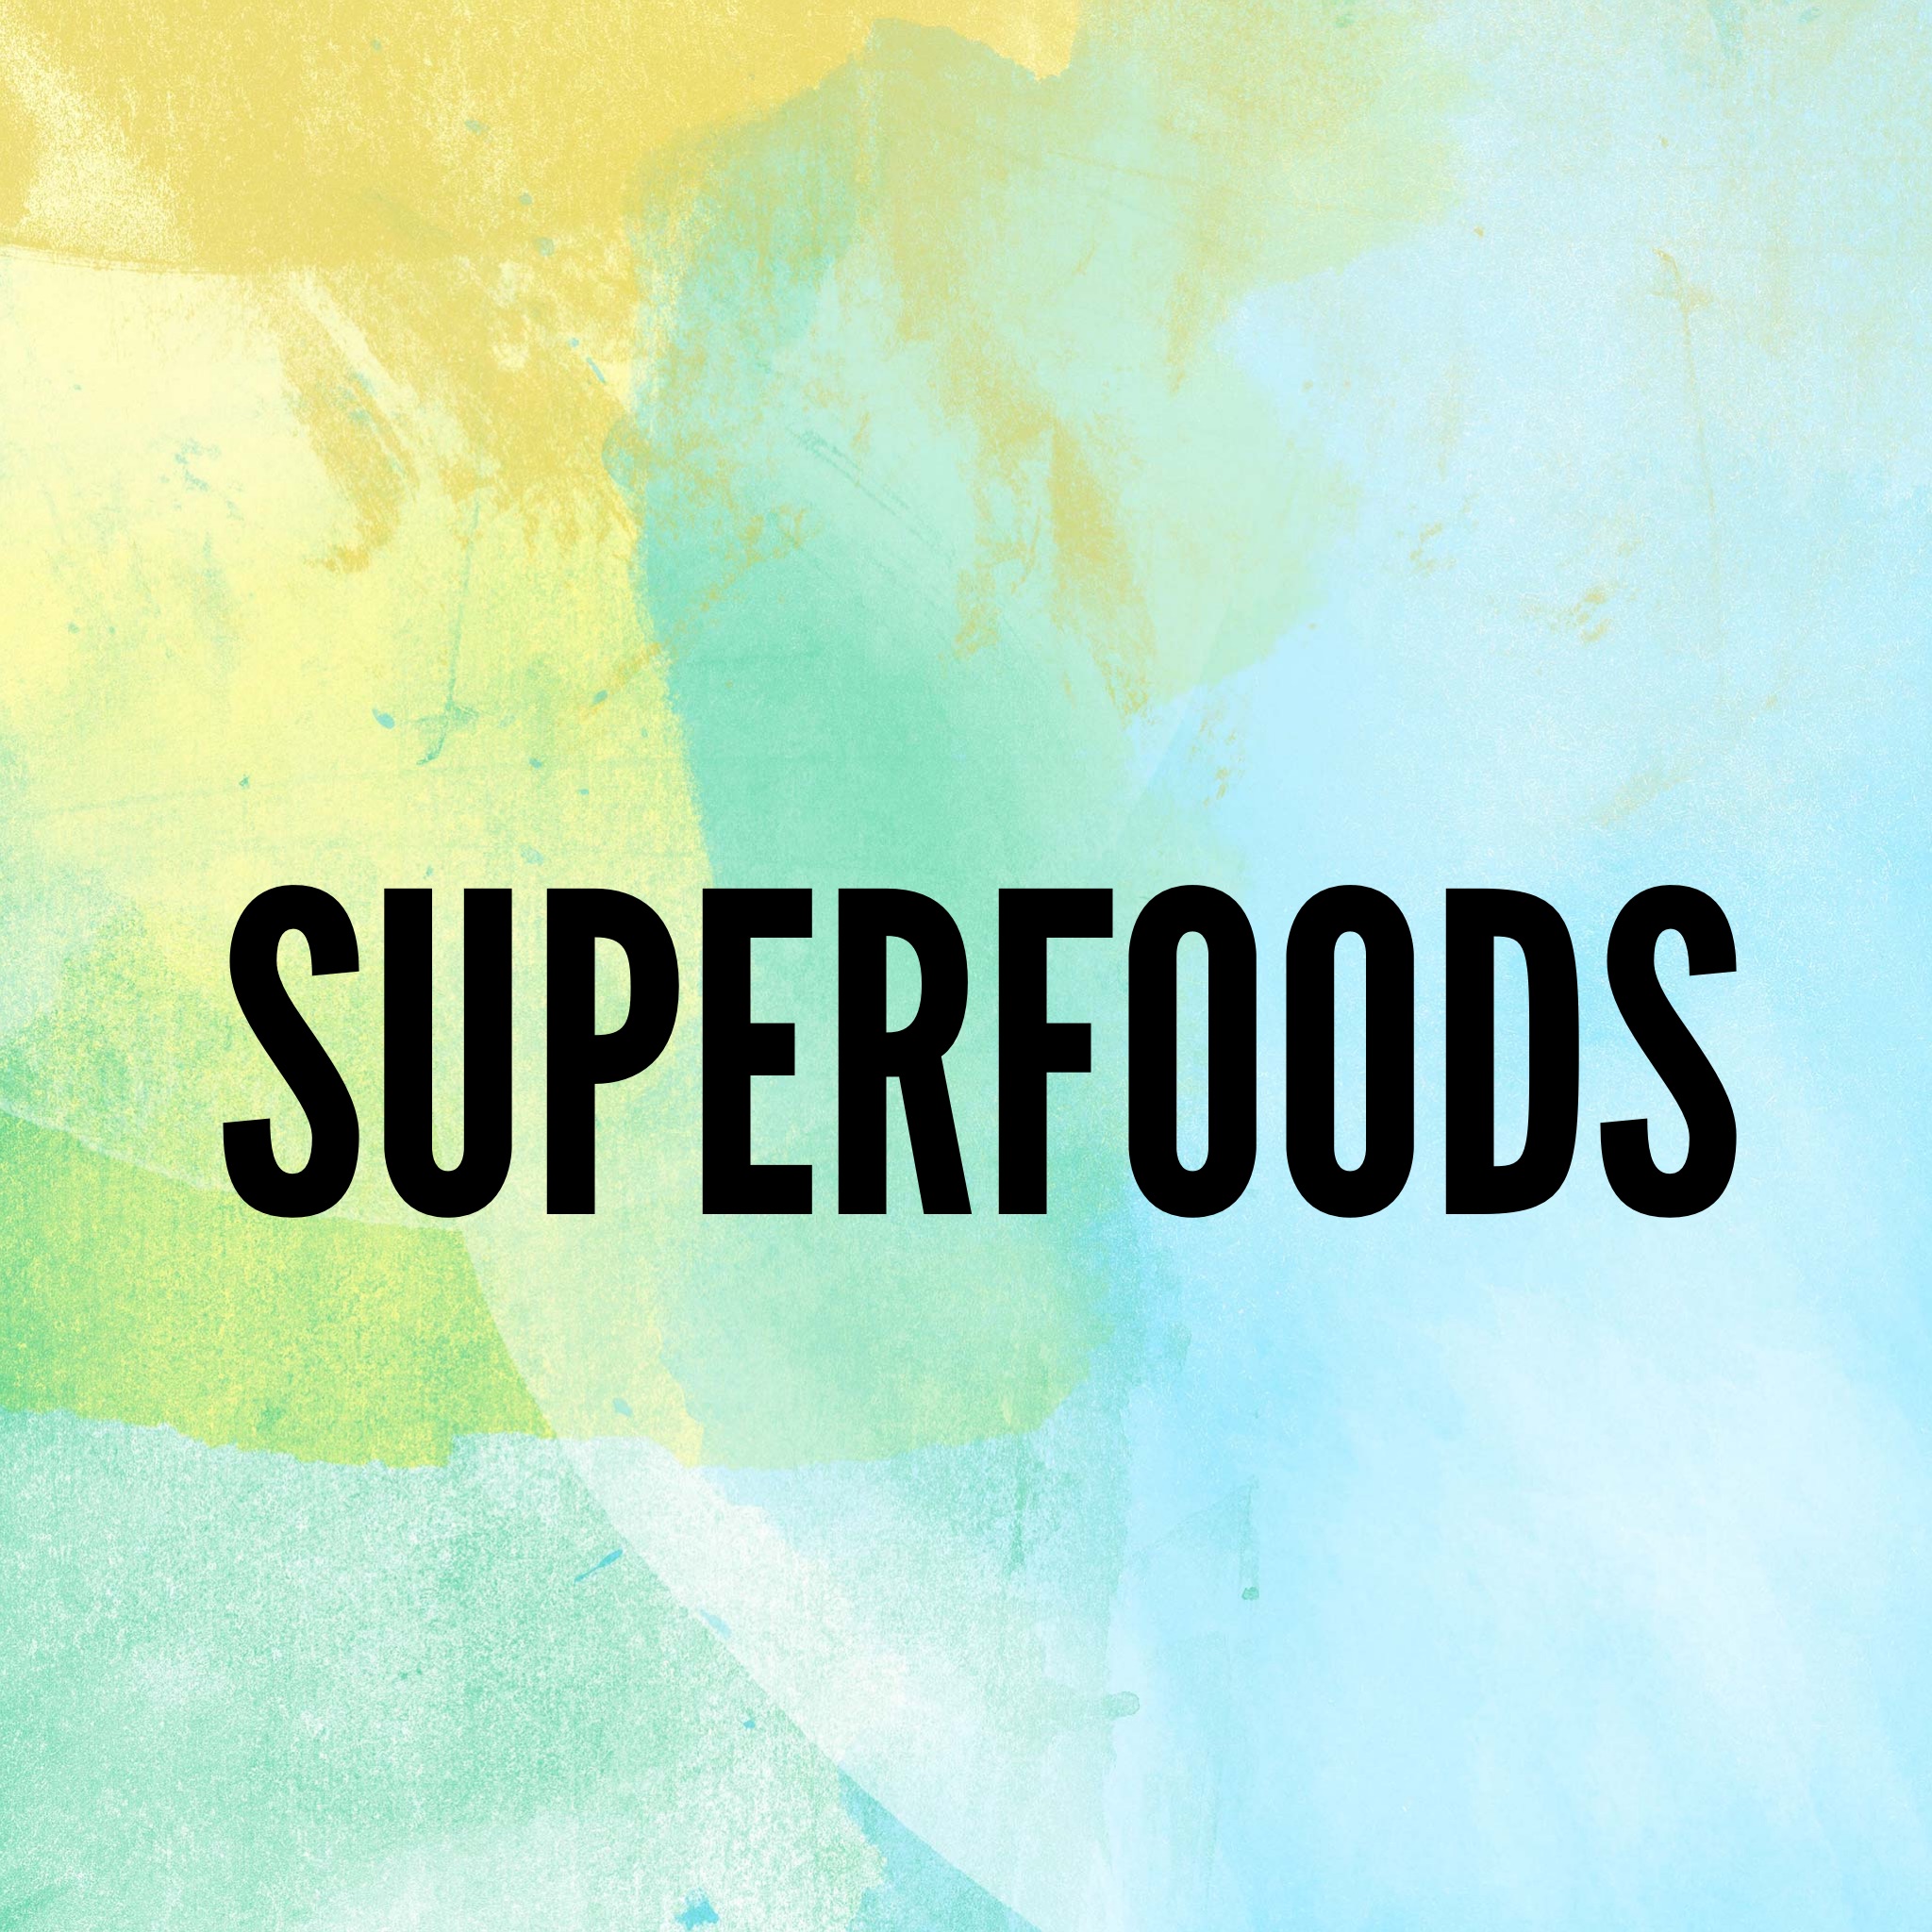 Weekly Tip - Superfoods